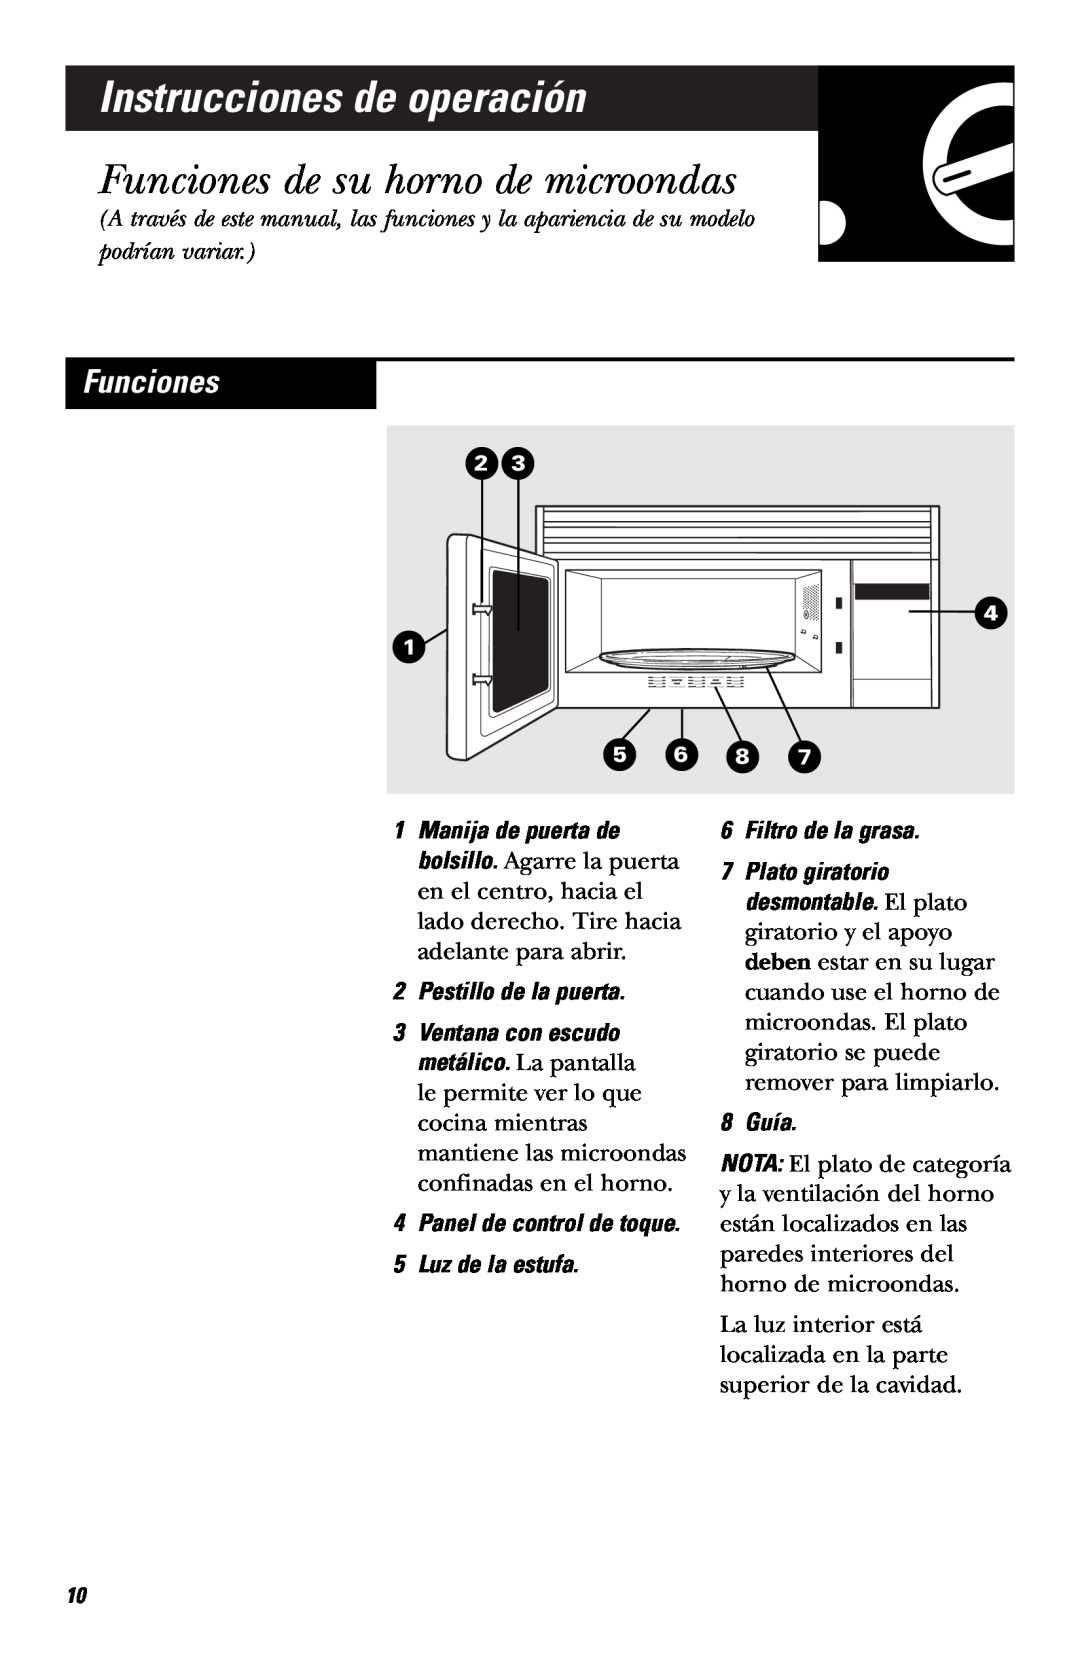 Hotpoint RVM1635 Instrucciones de operación, Funciones de su horno de microondas, Pestillo de la puerta, 8 Guía 